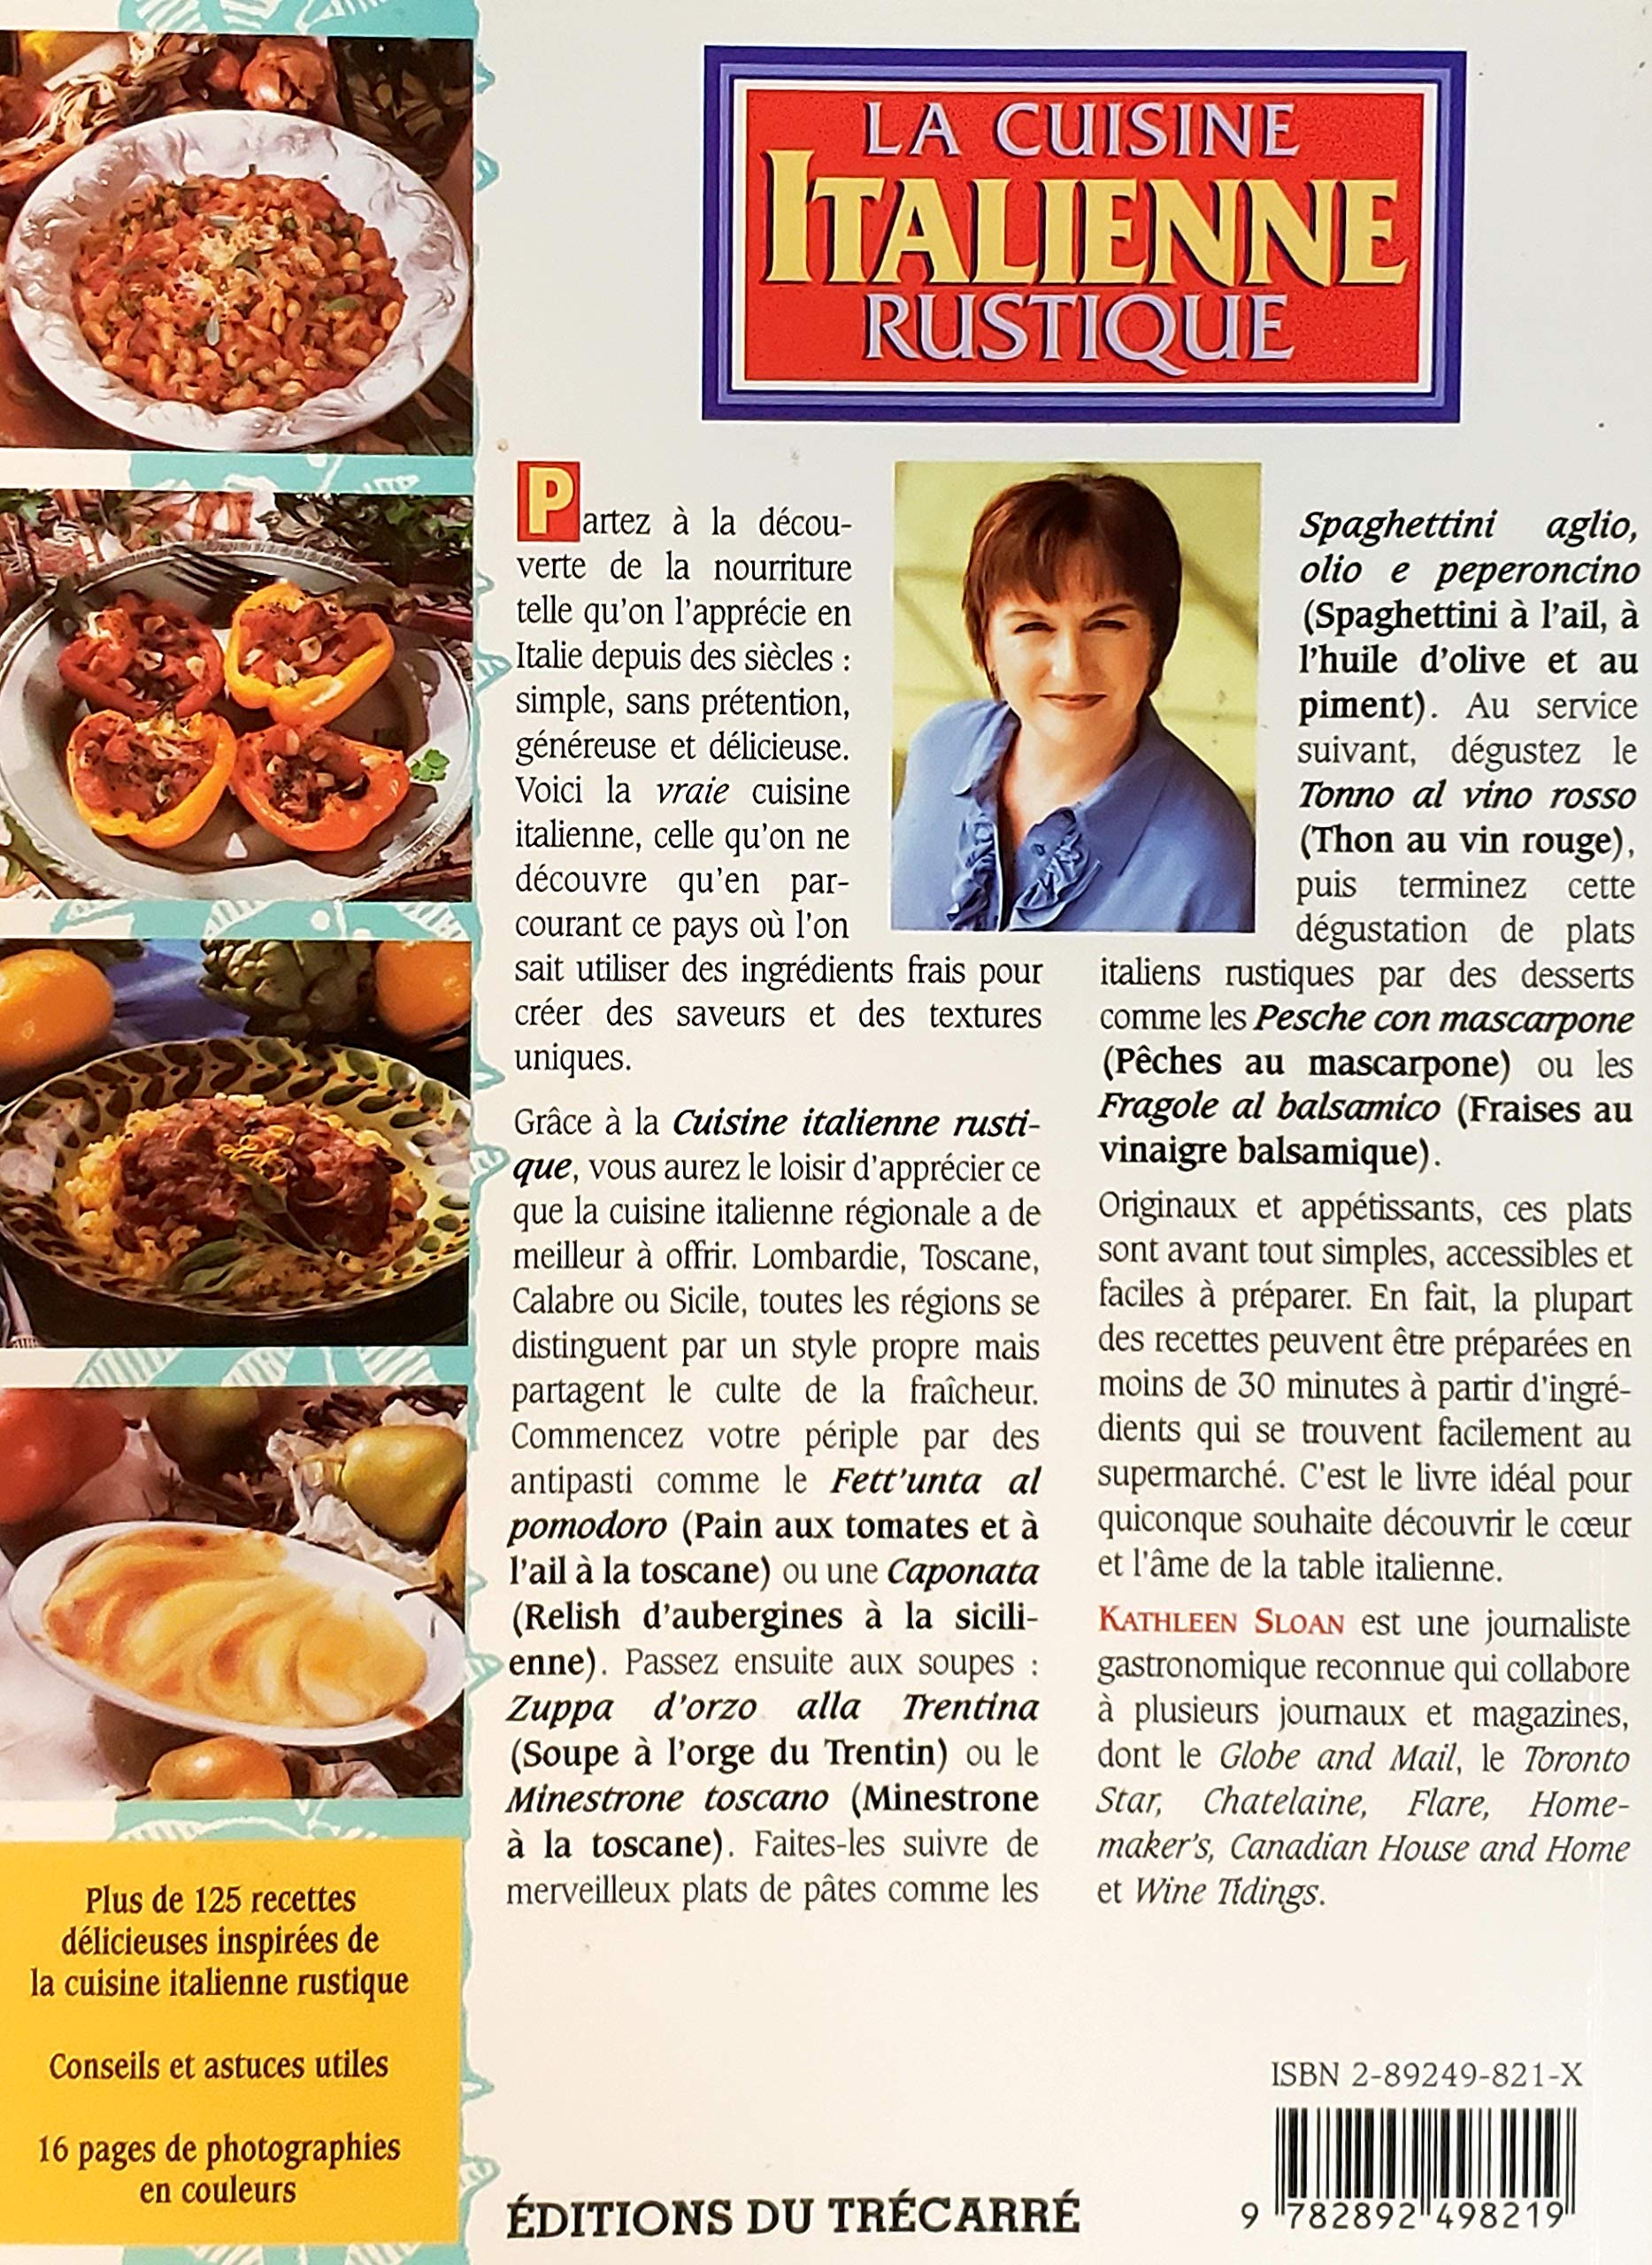 La cuisine italienne rustique (Kathleen Sloan)